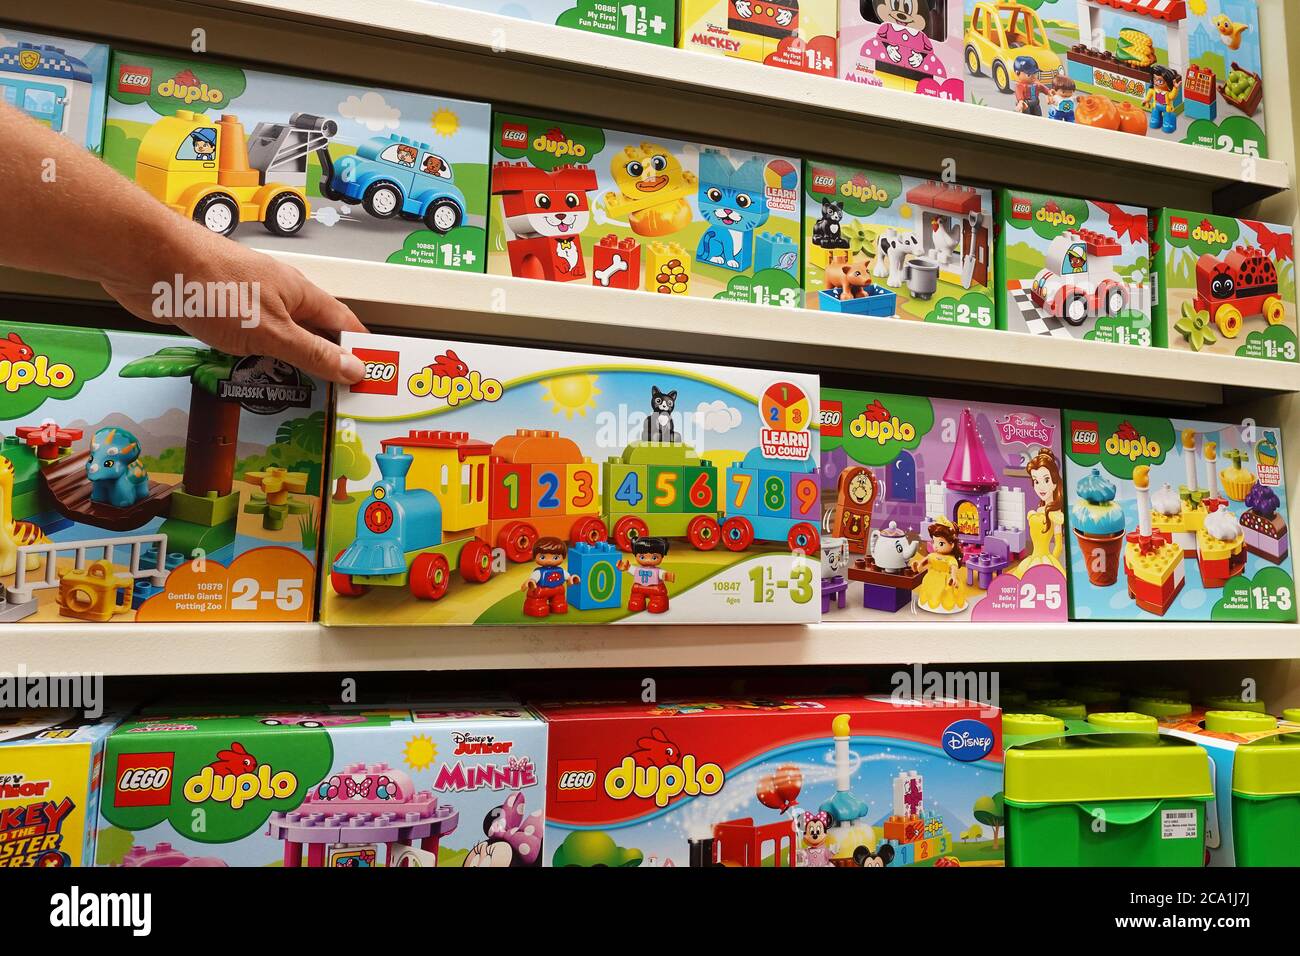 Lego Duplo boxes in a toyshop Stock Photo - Alamy